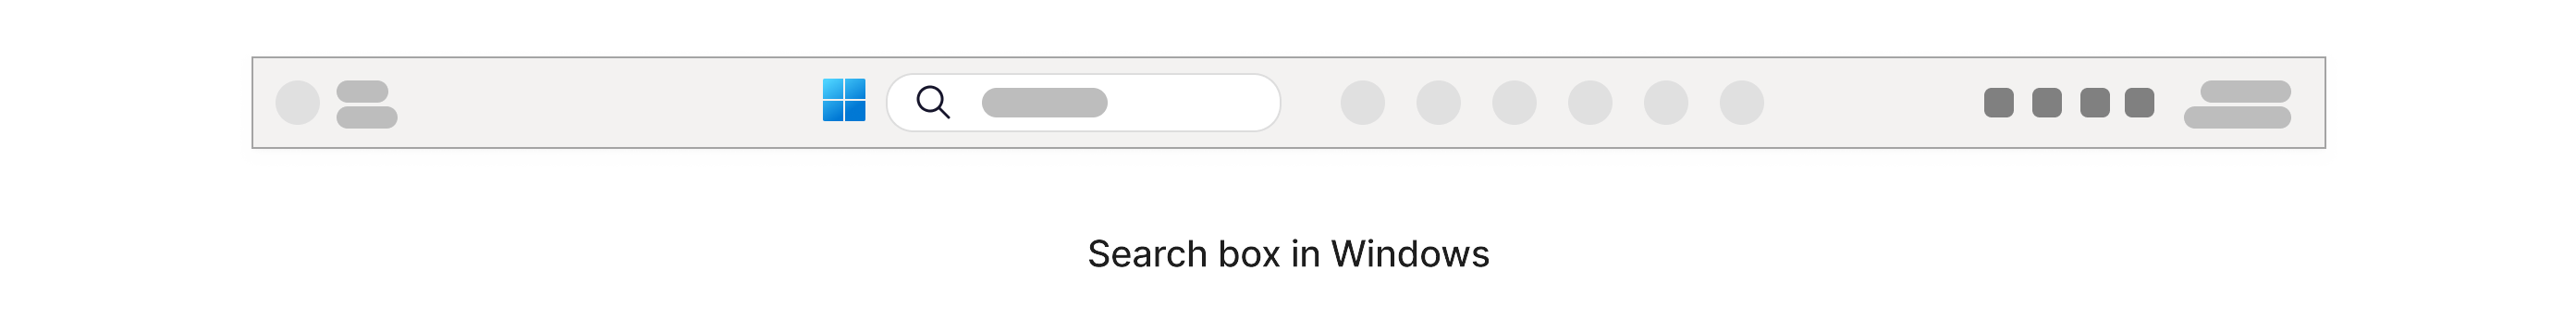 Iskalno polje z ikono lupa, ki je v opravilni vrstici sistema Windows na dnu zaslona.